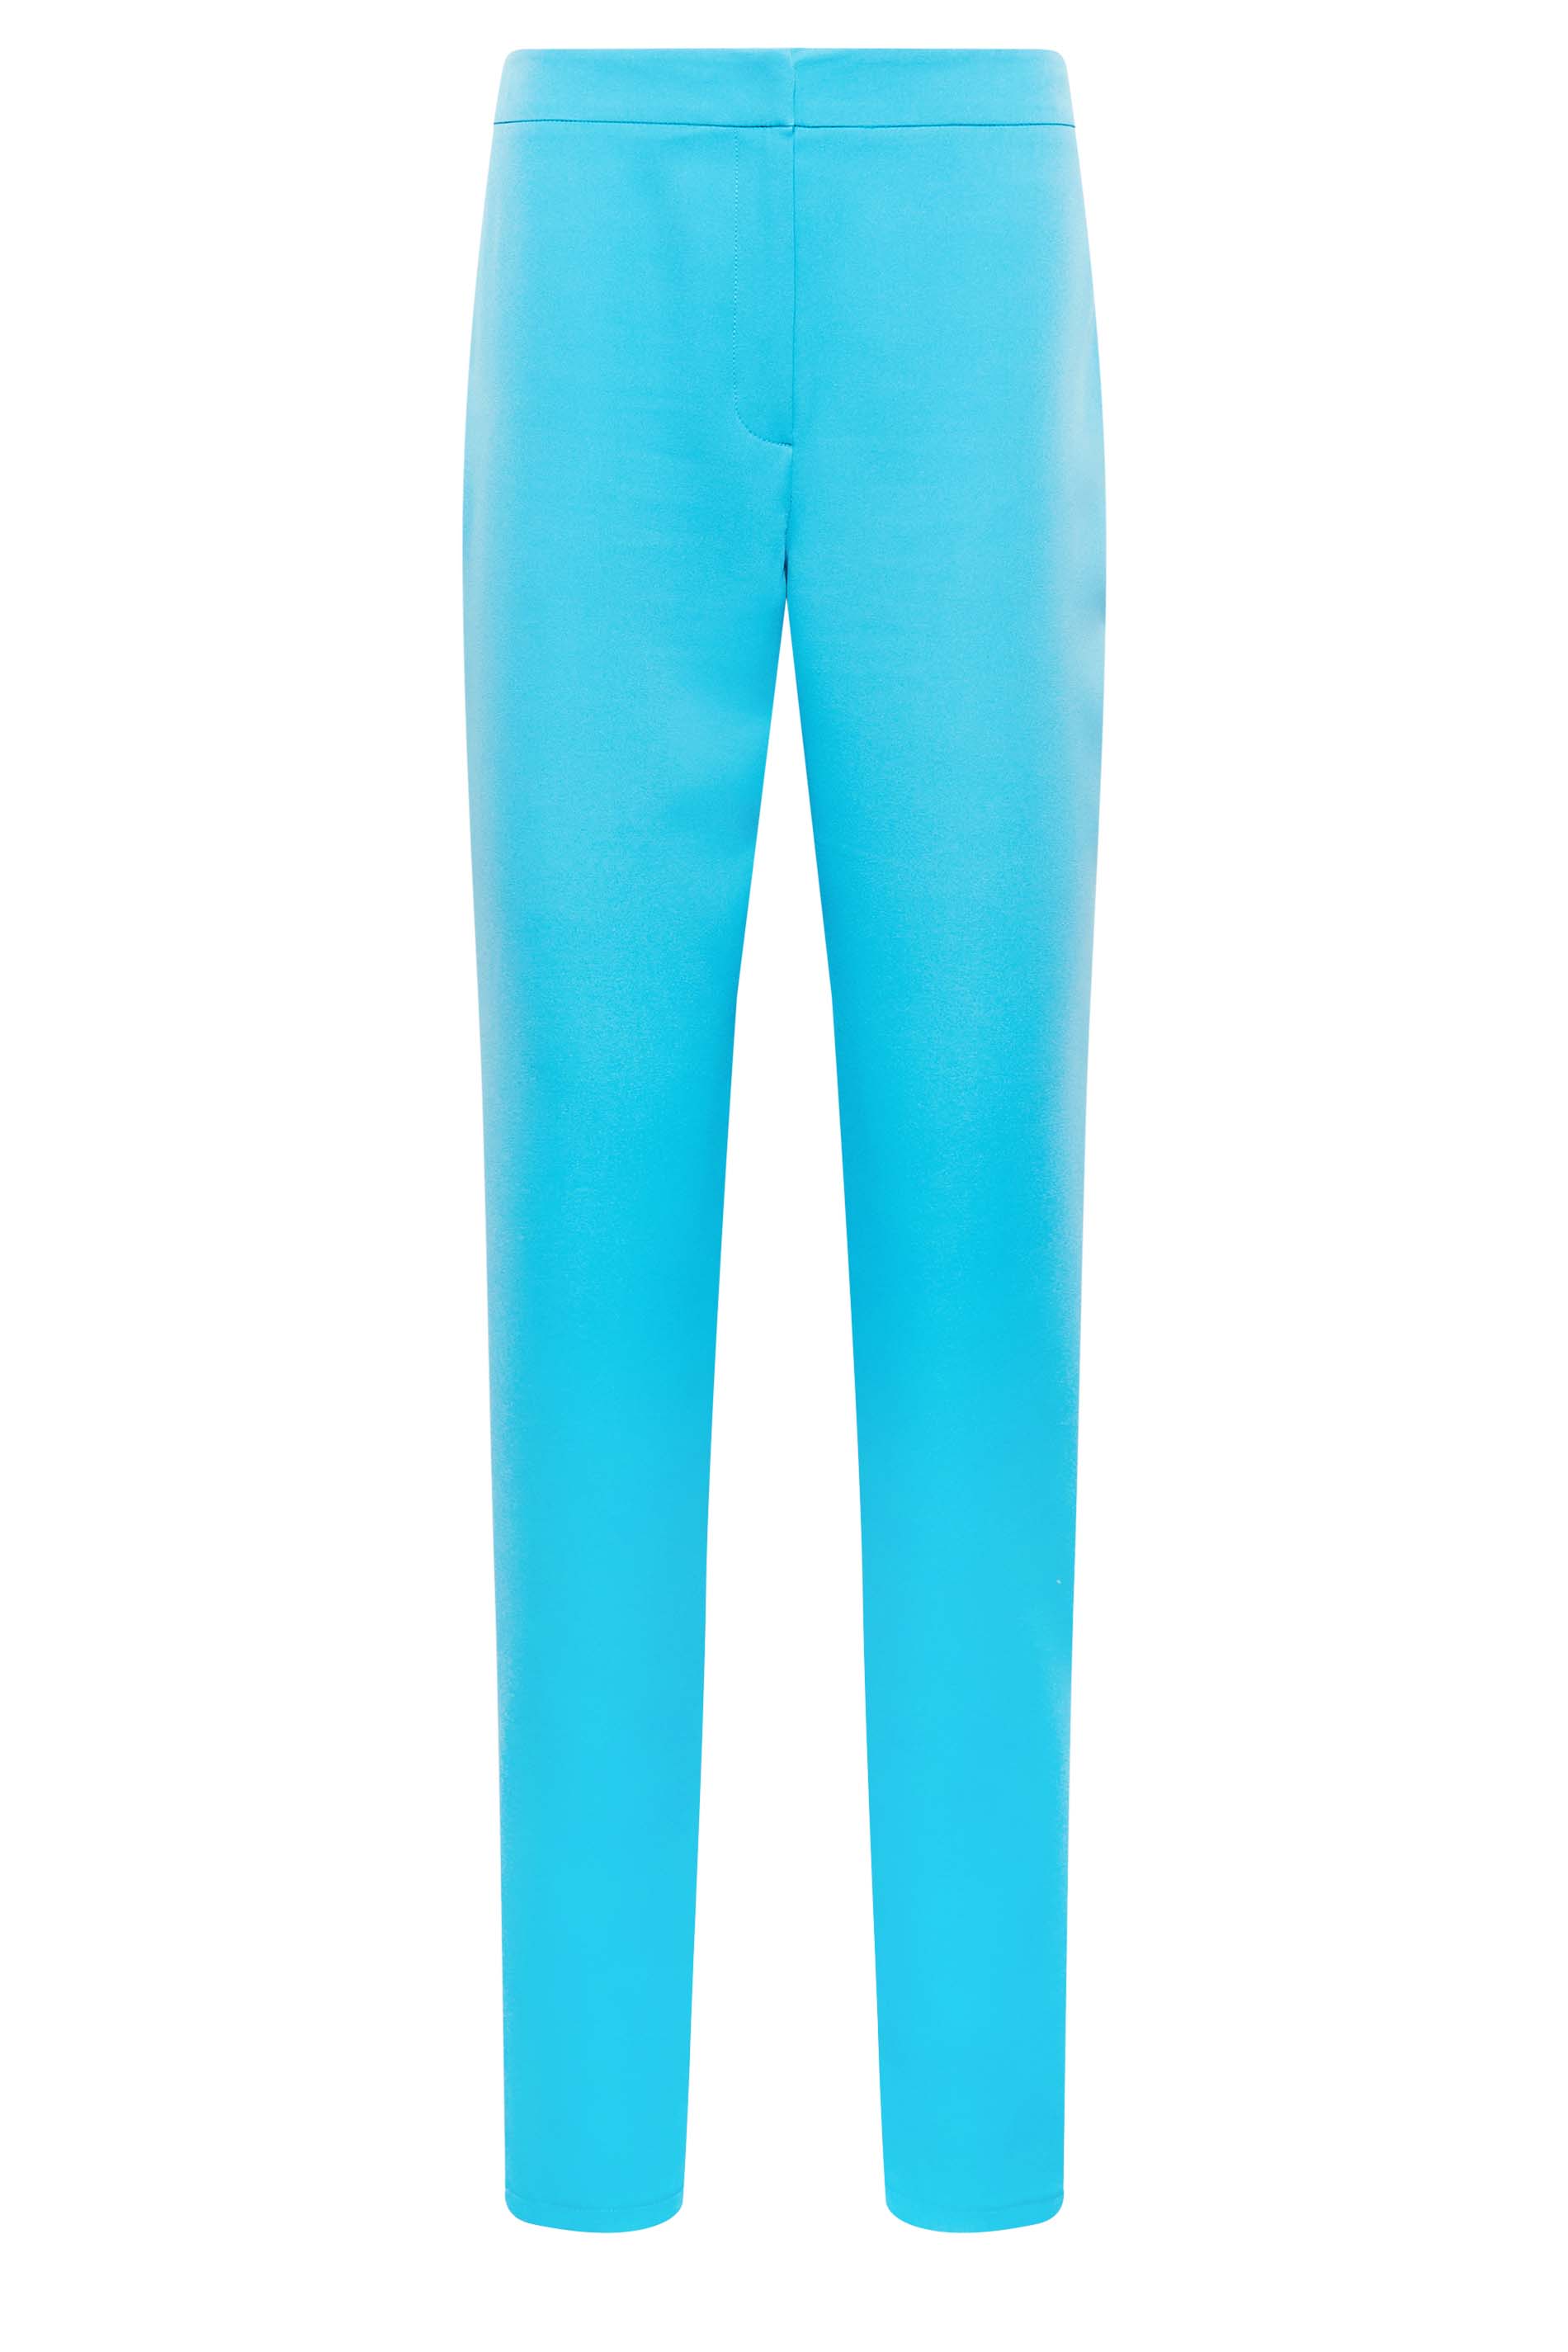 Cobalt Blue Trouser Pants - High-Waisted Pants - Wide-Leg Trouser - Lulus